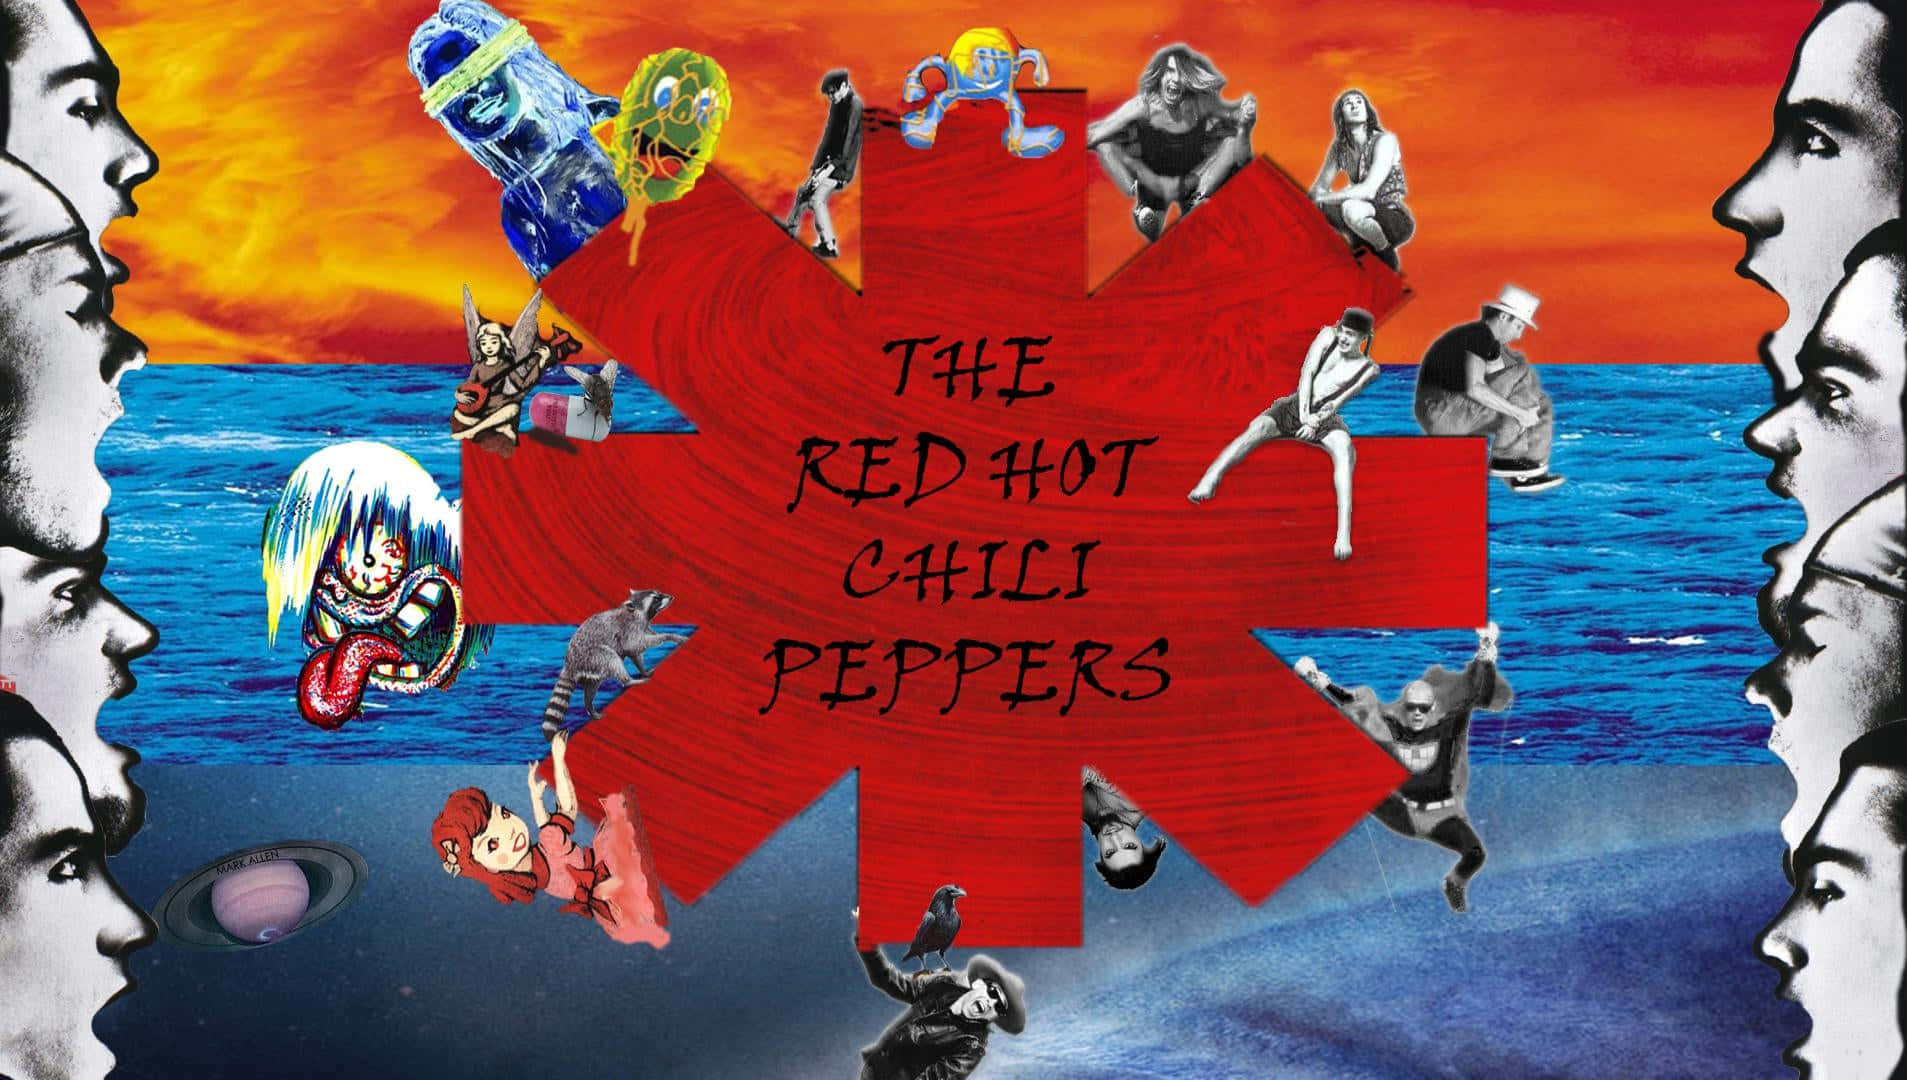 Redhot Chili Peppers, A Premiada Banda De Funk Rock. Papel de Parede